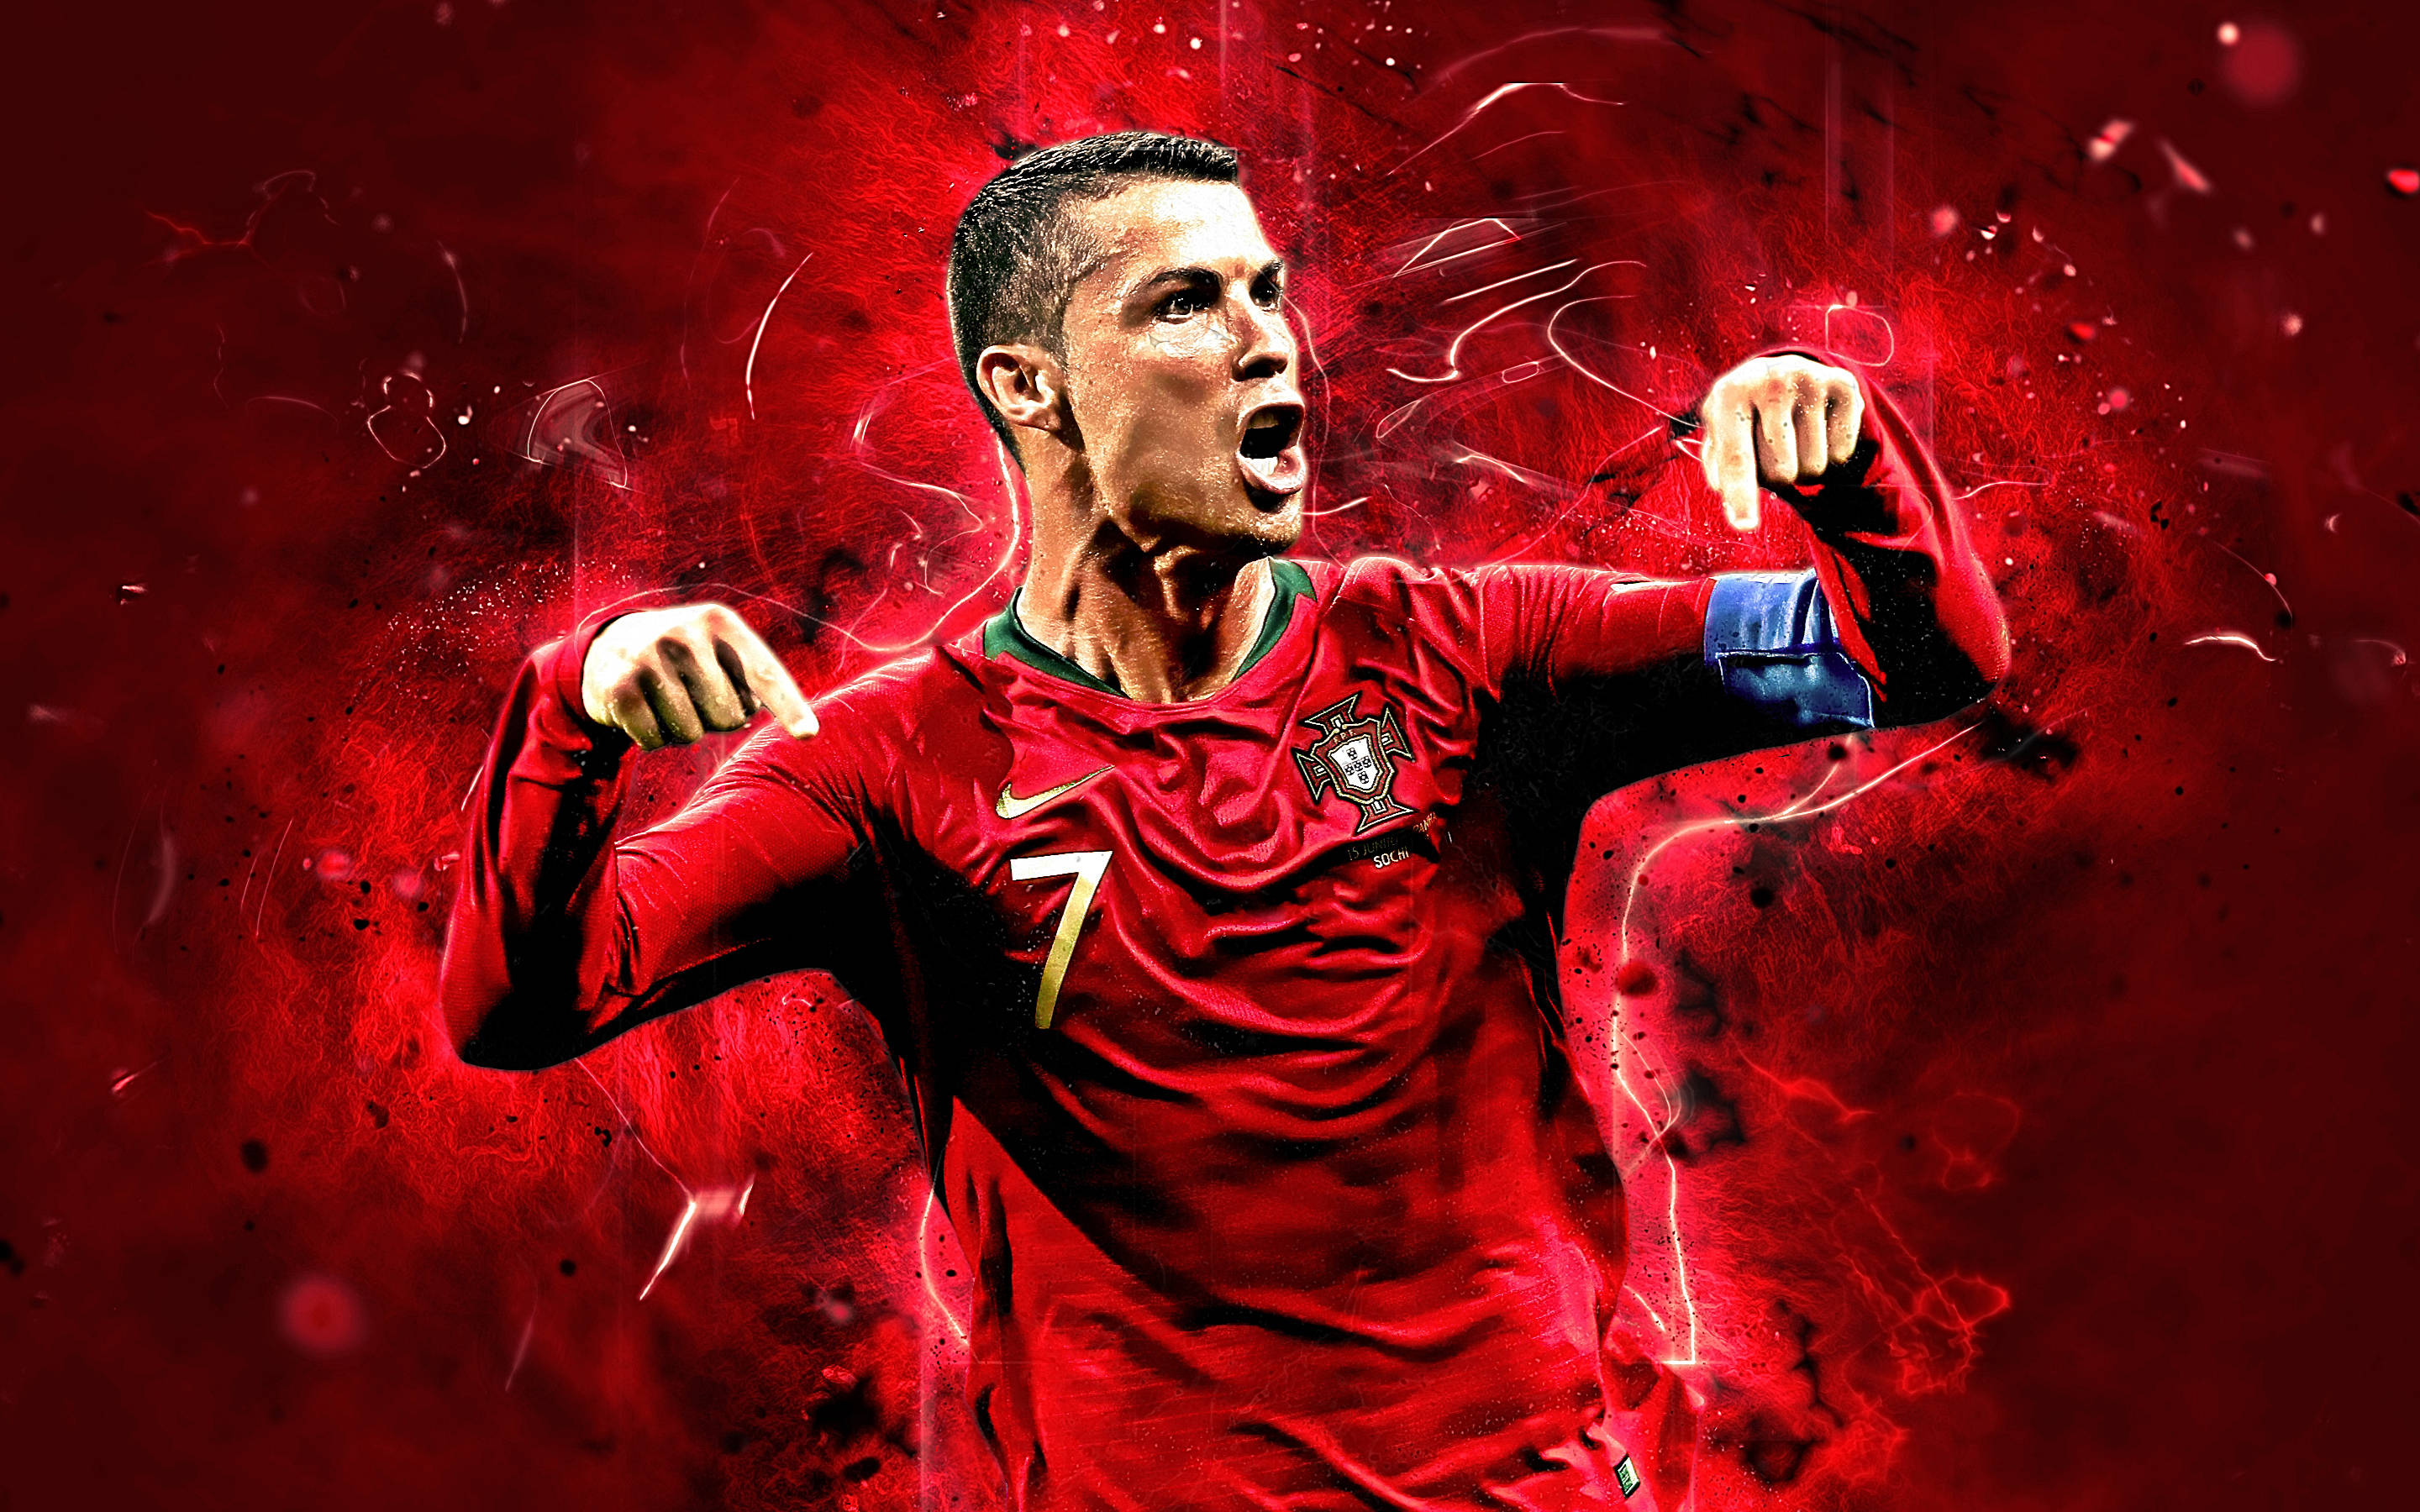 Red Poster Cristiano Ronaldo - Wallpaper: Bạn đang tìm kiếm một hình nền mới cho thiết bị của mình? Red Poster Cristiano Ronaldo với hình ảnh đầy sức mạnh sẽ là lựa chọn hoàn hảo cho bạn. Hãy cùng xem hình ảnh này và trang trí cho thiết bị của bạn thêm phần cuốn hút và ấn tượng.